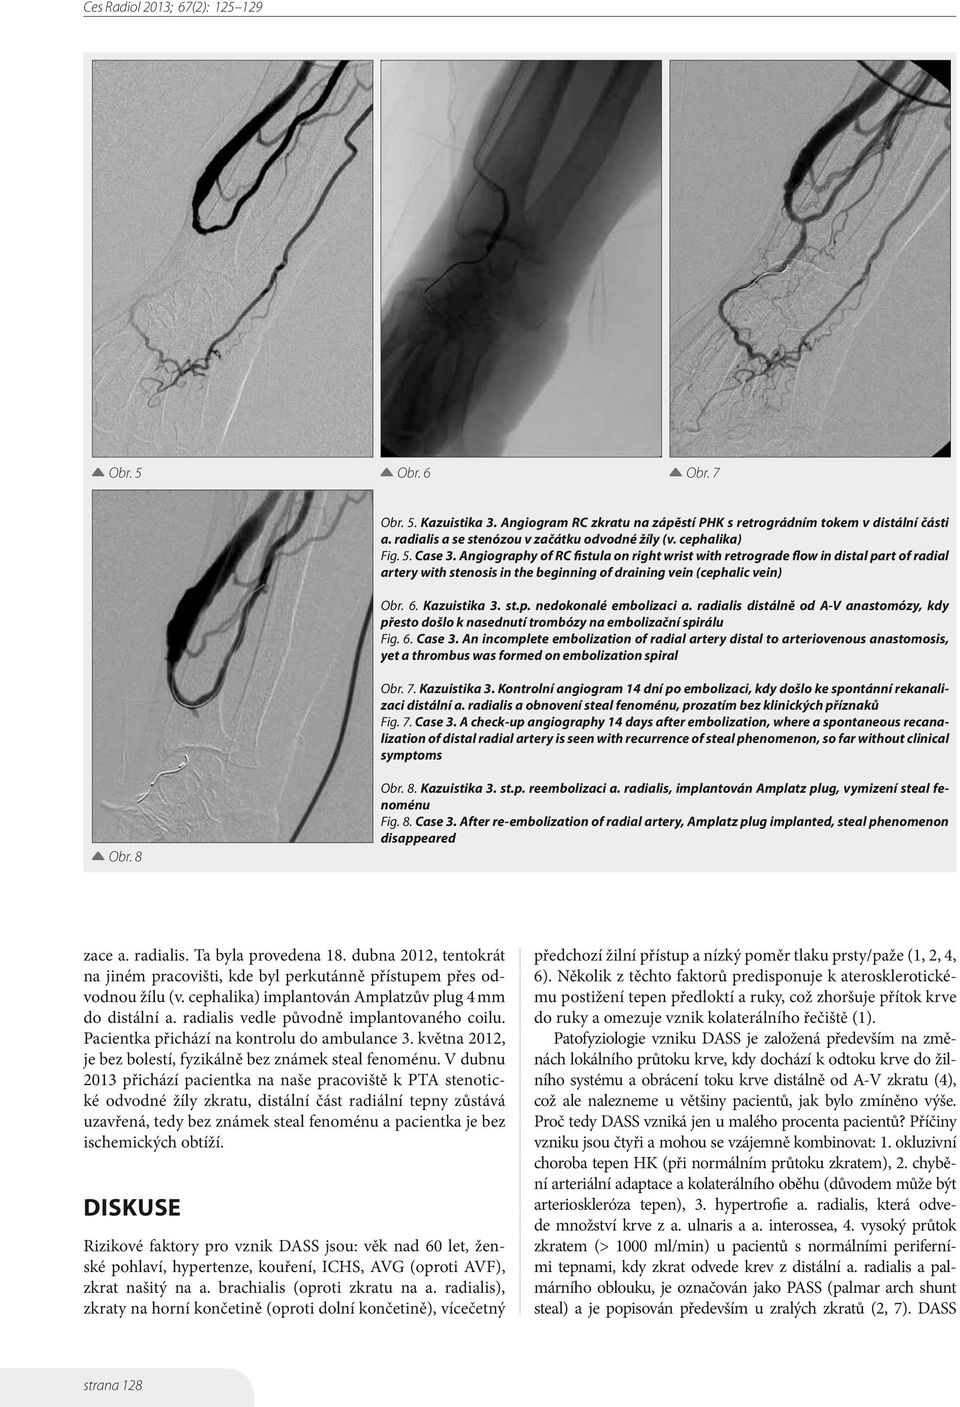 radialis distálně od A-V anastomózy, kdy přesto došlo k nasednutí trombózy na embolizační spirálu Fig. 6. Case 3.